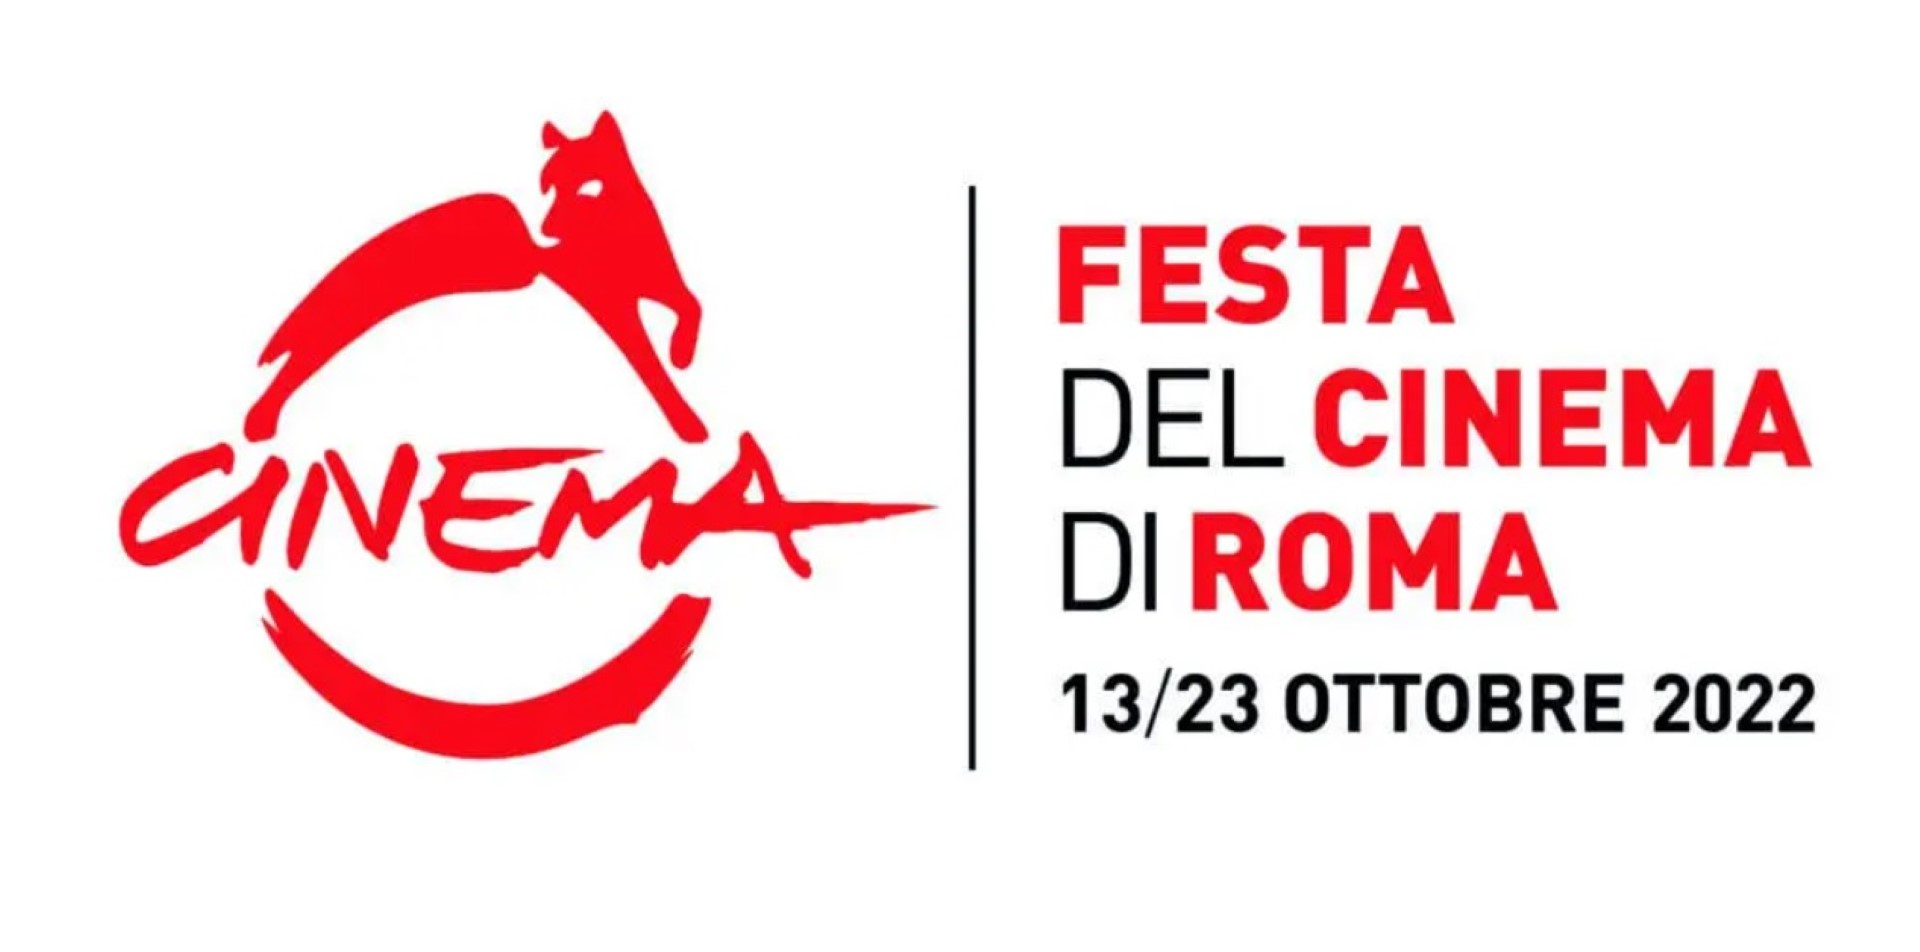 Festa del Cinema di Roma 2022, disponibili gli accrediti per i soci Fedic